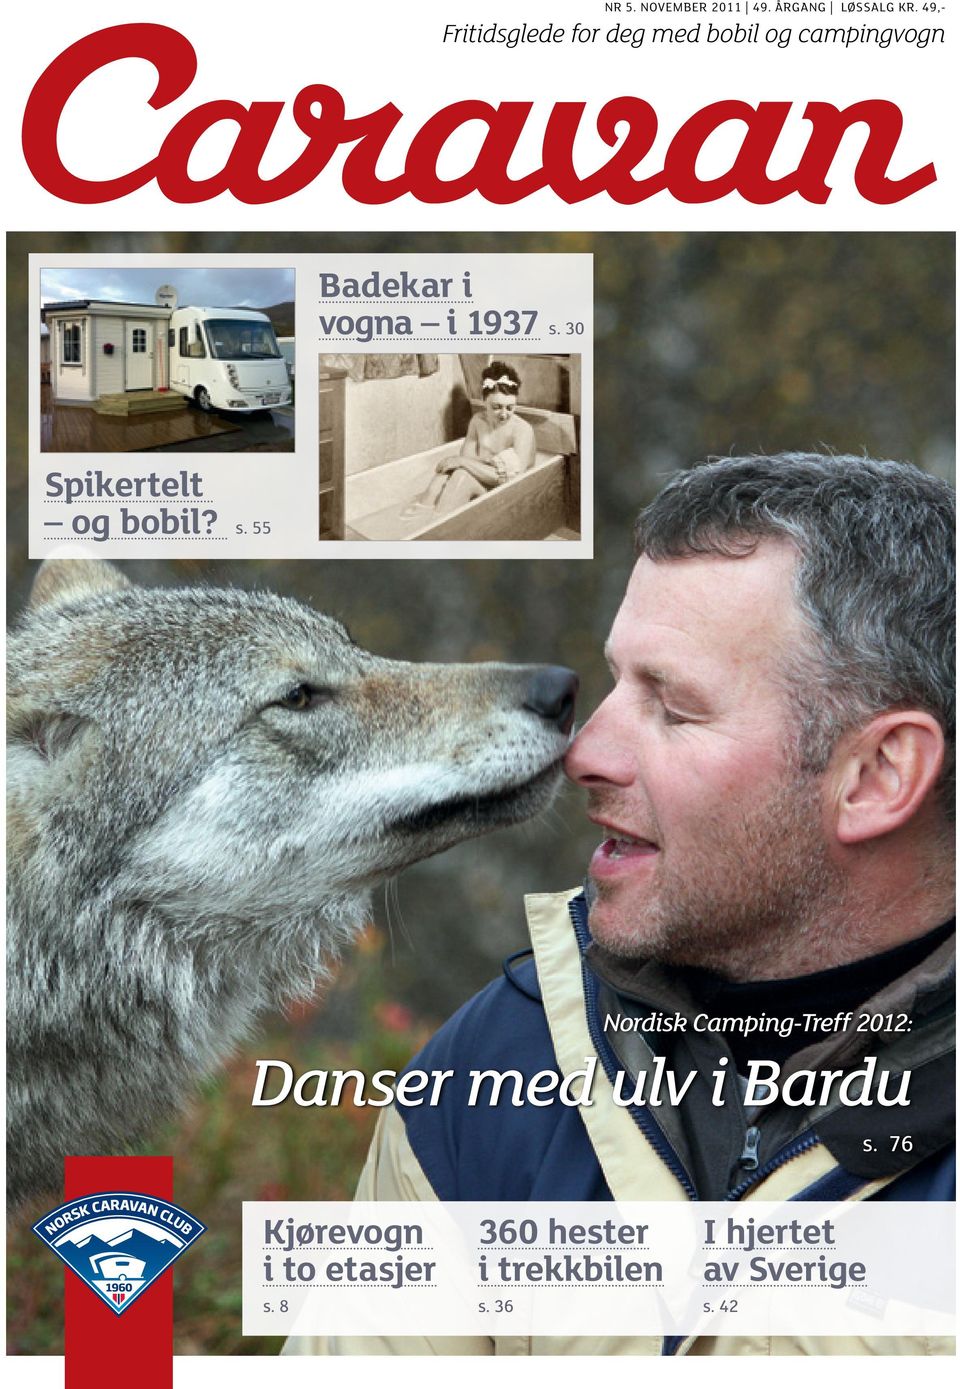 1937 s. 30 Spikertelt og bobil? s. 55 Nordisk Camping-Treff 2012: Danser med ulv i Bardu s.